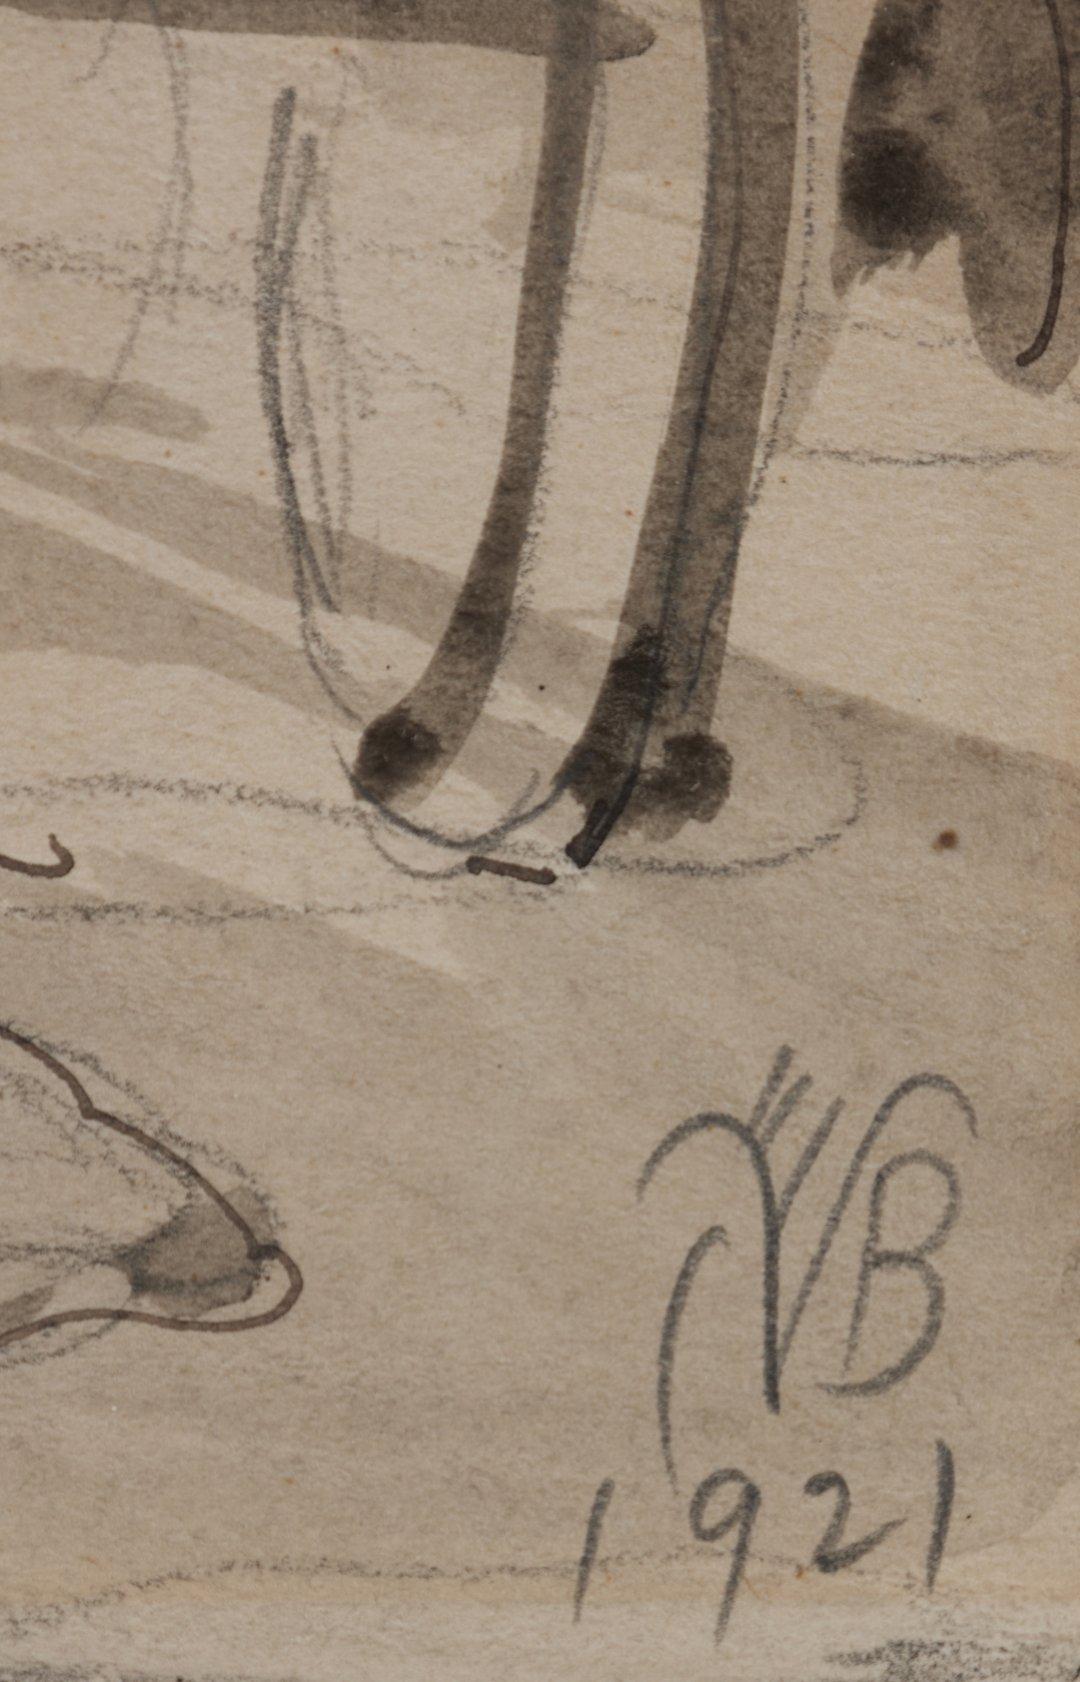 Charles Burchfield (américain, 1893-1967)
Scène de village, 1921
Encre, crayon et aquarelle sur papier
Signé et daté en bas à droite
11 x 8,5 pouces
17.75 x 14.75 pouces, encadré

Né à Ashtabula Harbor, dans l'Ohio, Charles Burchfield s'est fait